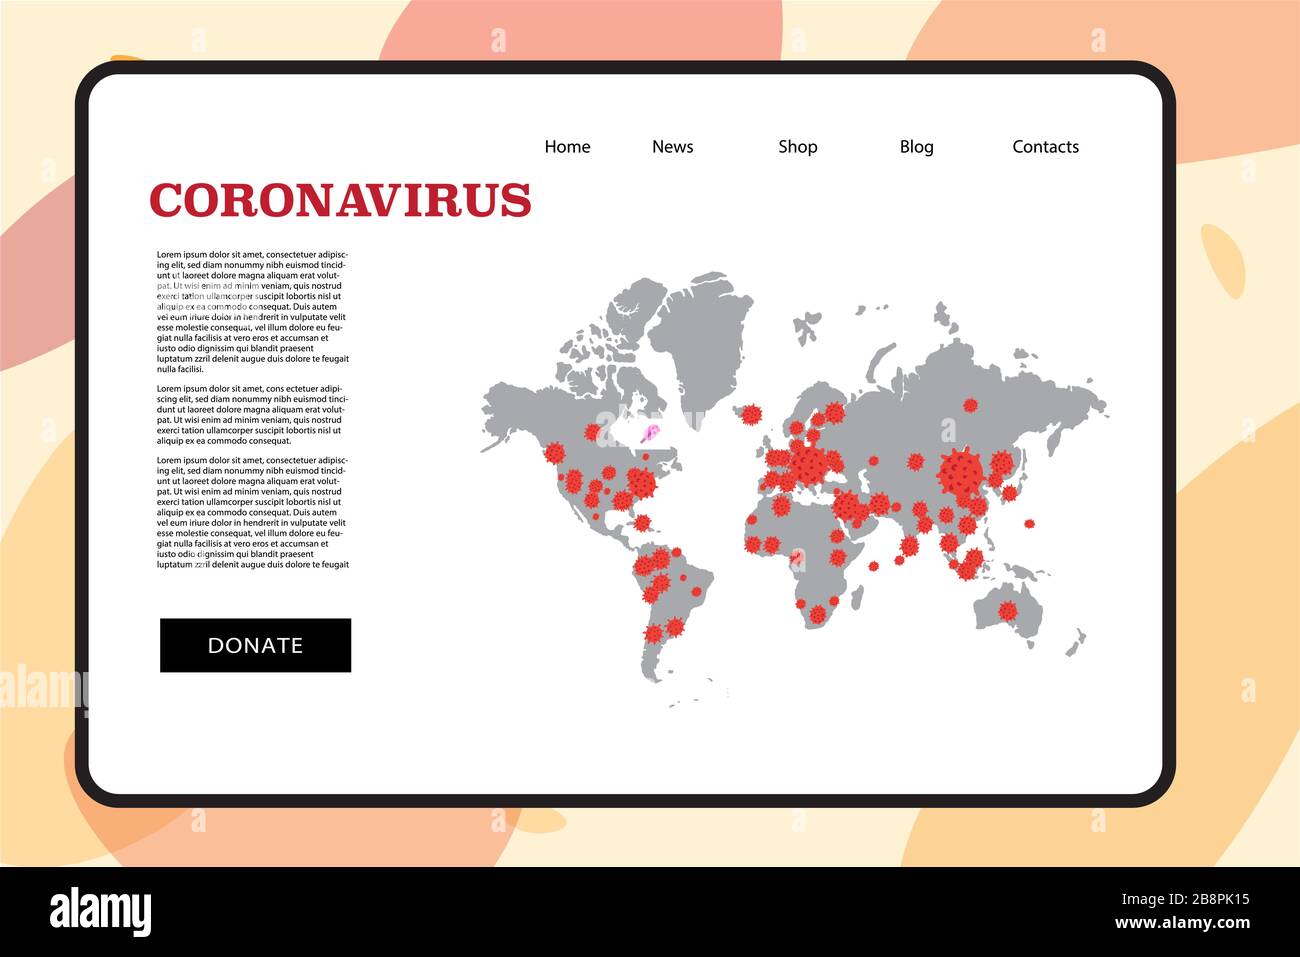 Mappa attenzione coronavirus viaggio allerta concetto 2019-nC0V focolaio. Interrompere la pandemia del microbo COVID-19. Il virus attacca il tratto respiratorio, infezioni medico rischio per la salute . Semplice stile cartoon piatto Illustrazione Vettoriale